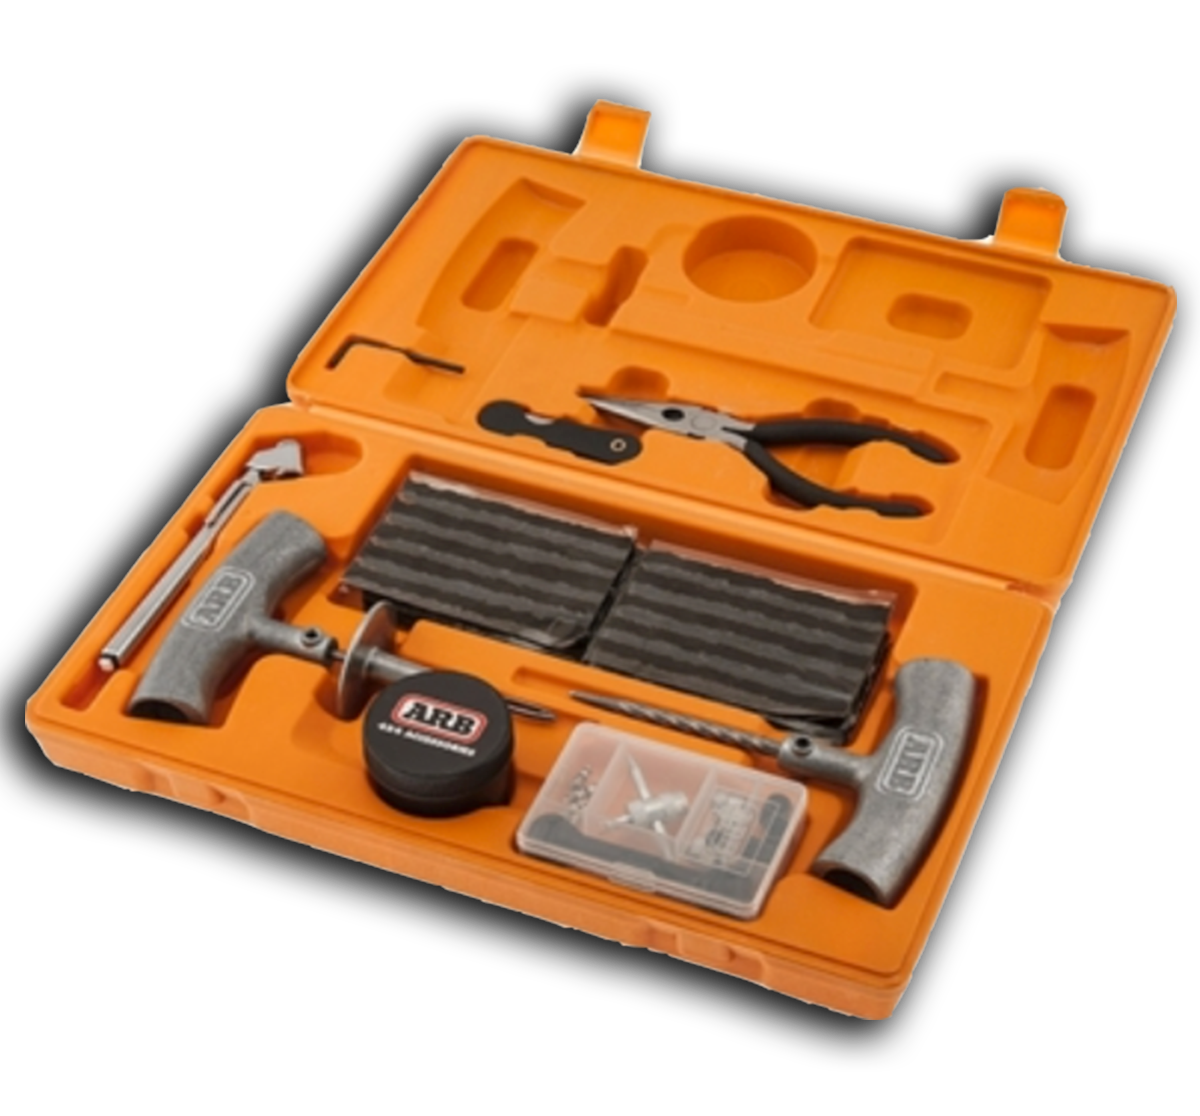 Speedy Seal Series II Repair Kit by ARB